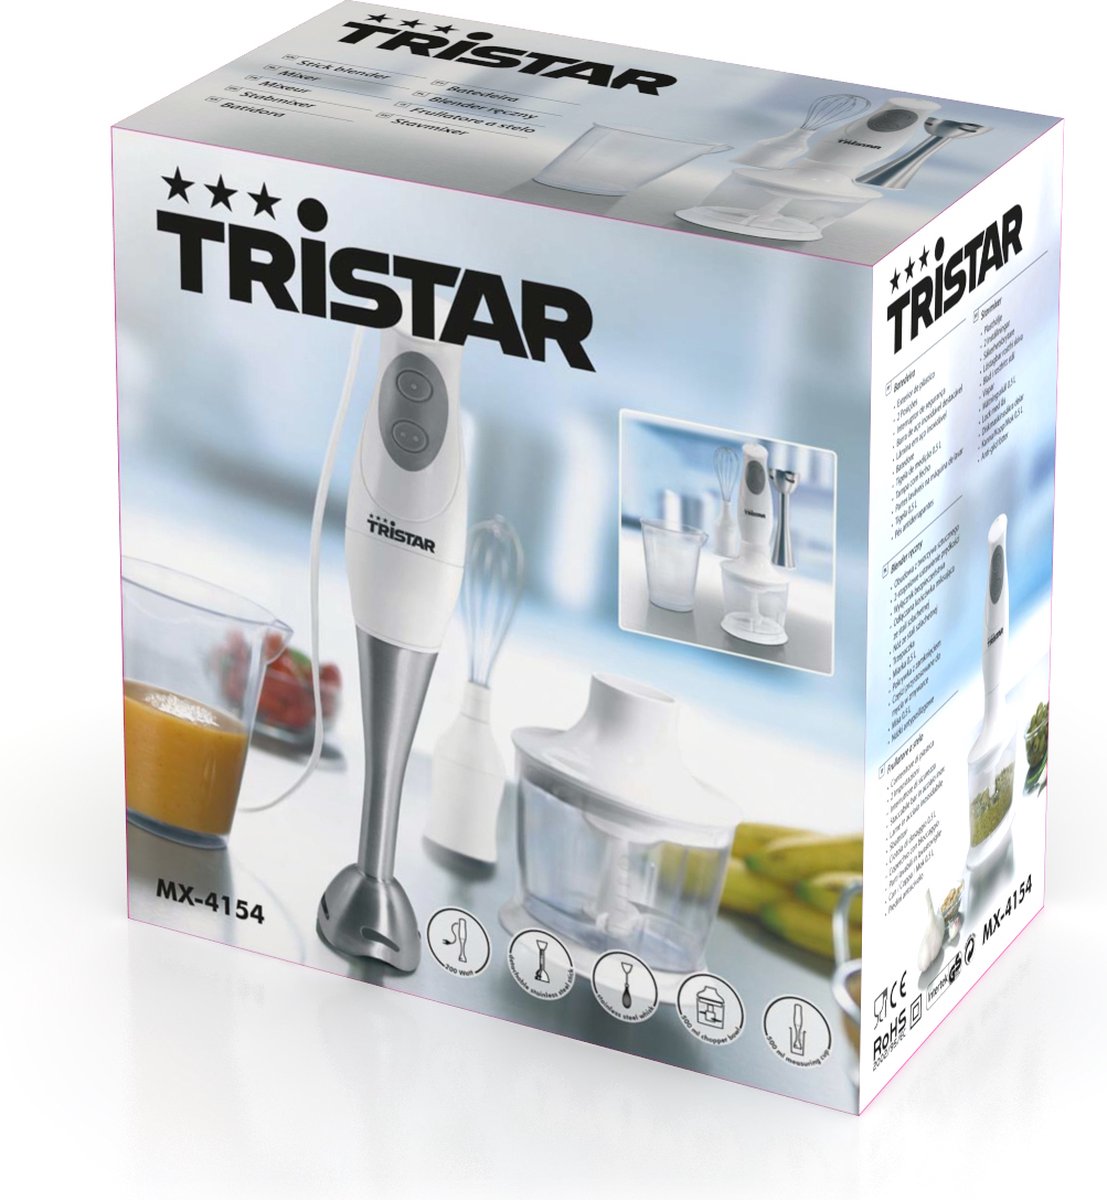 Tristar MX-4154 - Staafmixer incl accessoires | bol.com